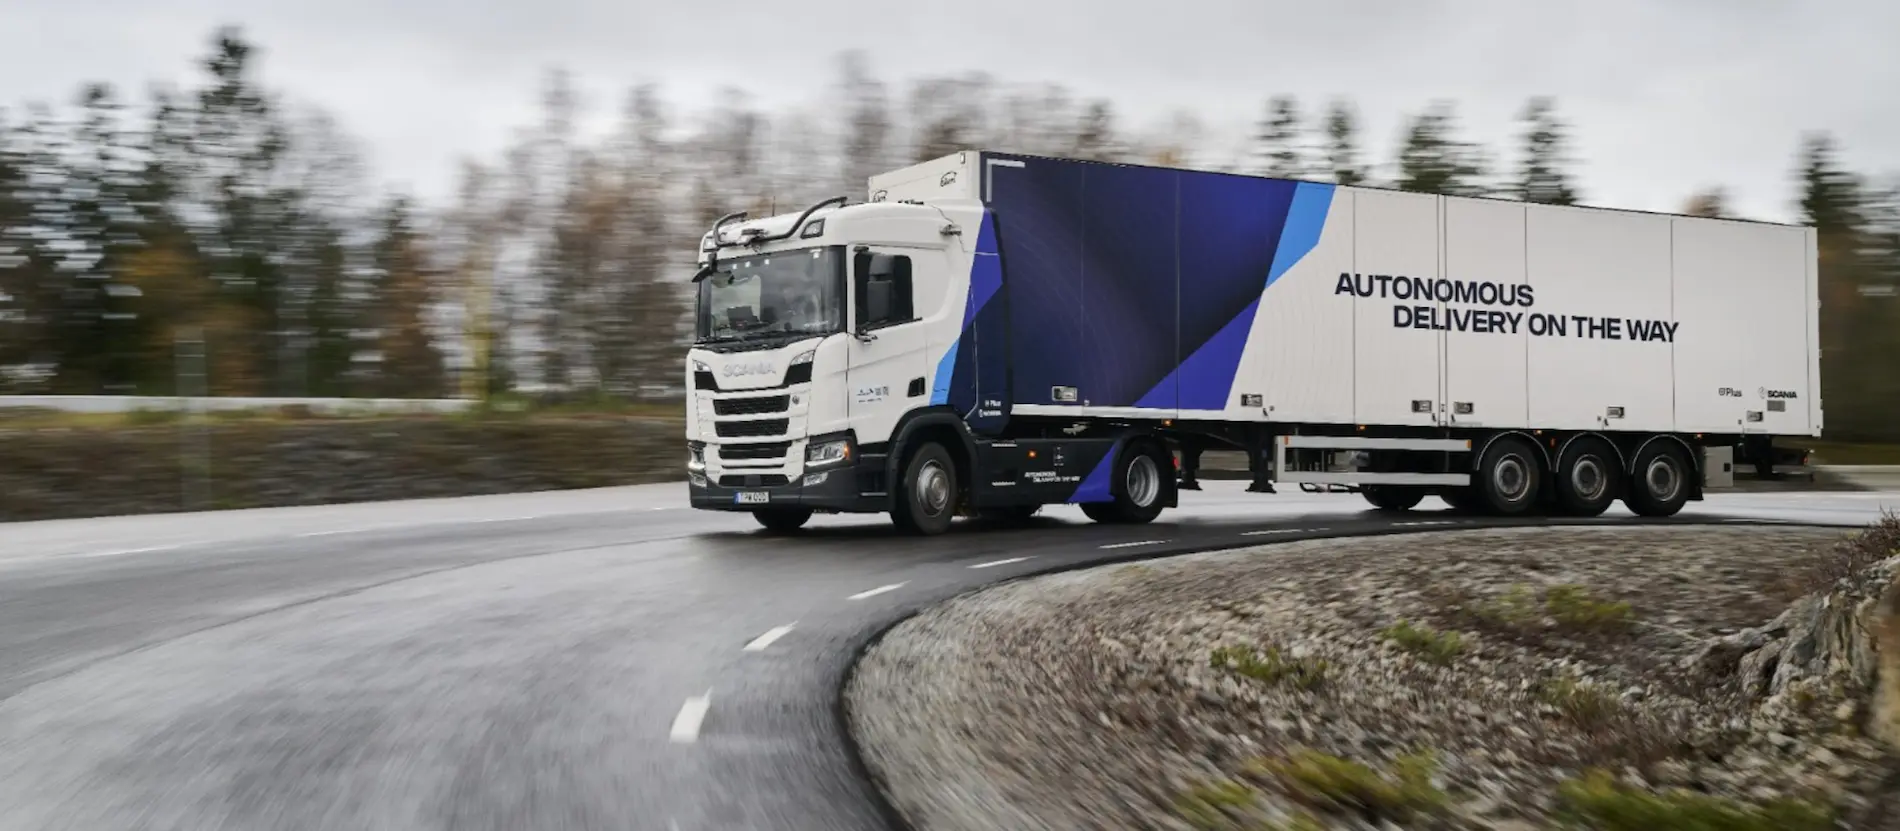 El fabricante, que ha estado probando soluciones de transporte autónomo en Suecia, ampliará las operaciones piloto a otros países europeos.